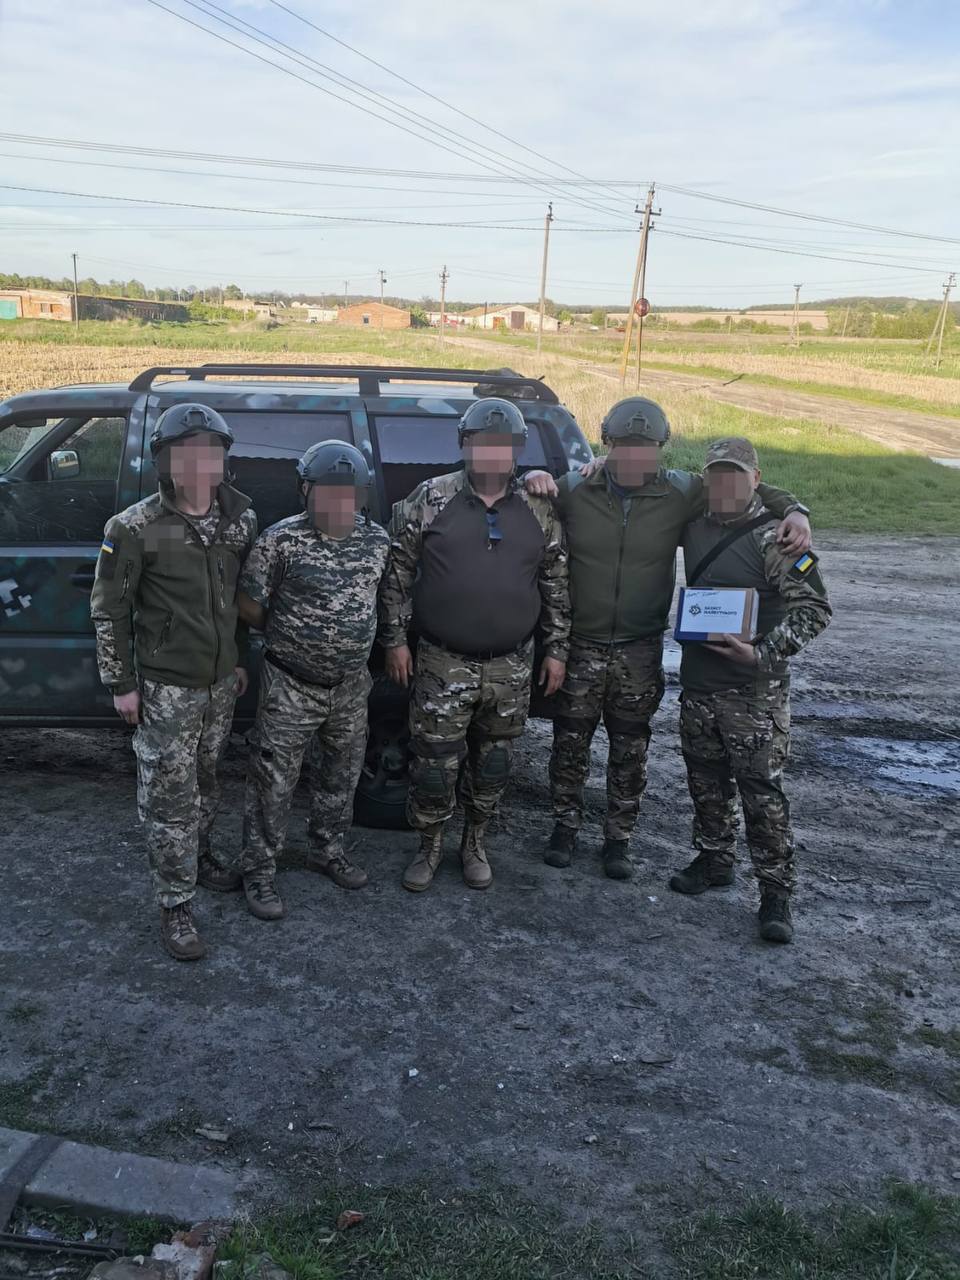 5 Ukrainian soldiers